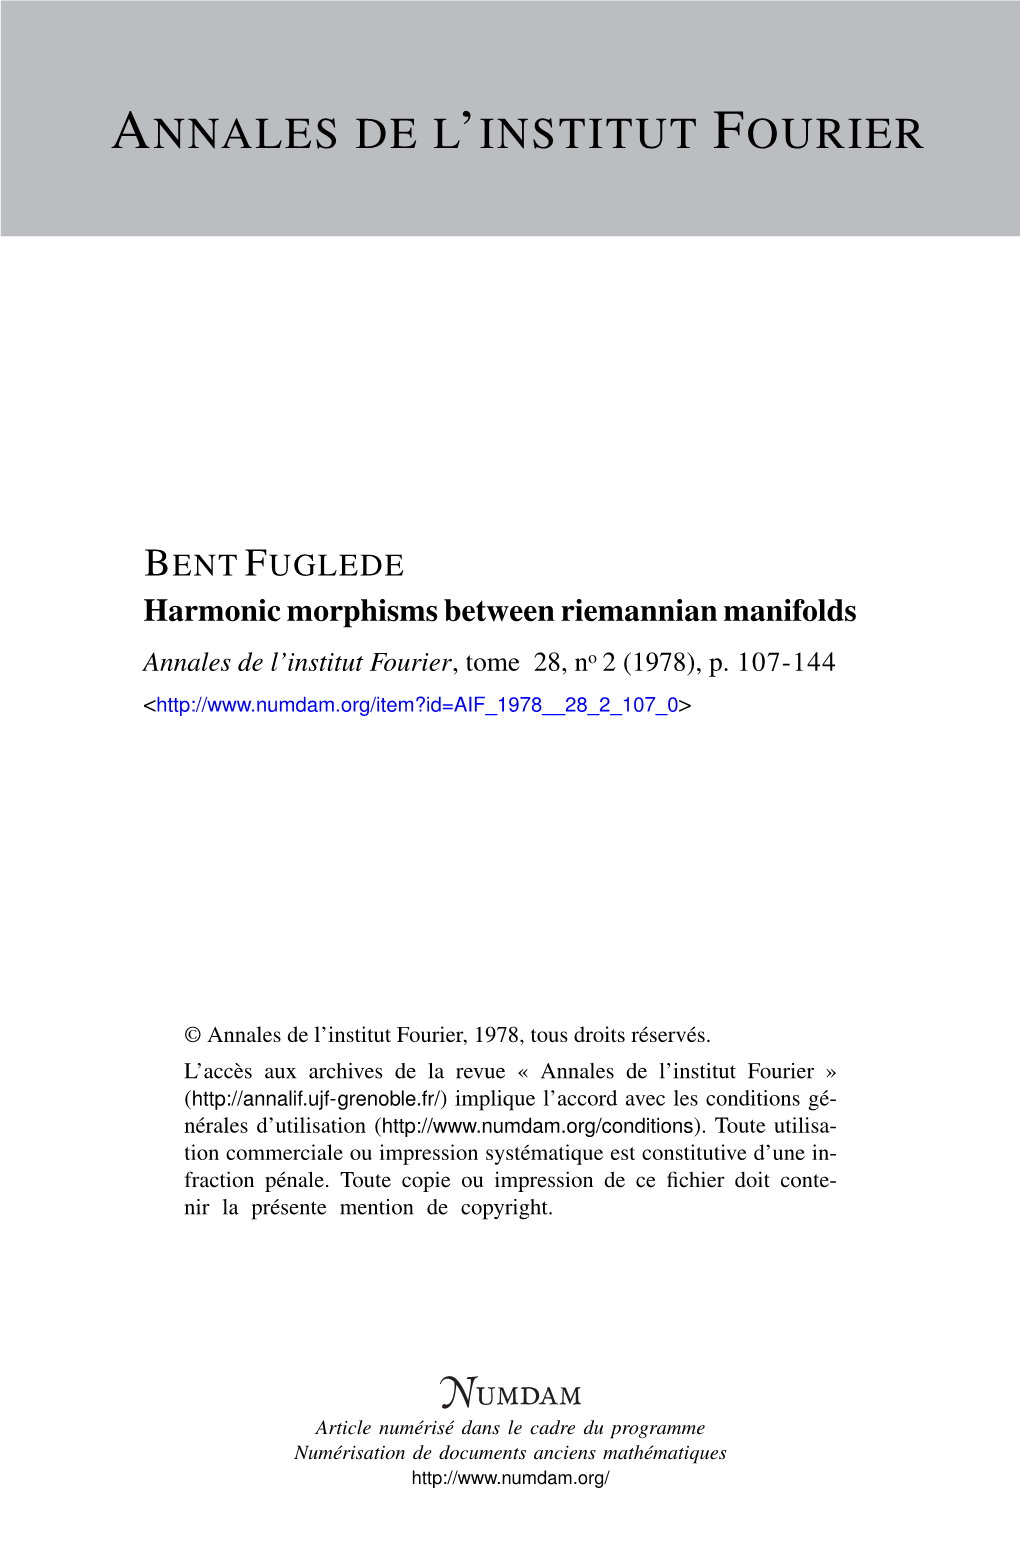 Harmonic Morphisms Between Riemannian Manifolds Annales De L’Institut Fourier, Tome 28, No 2 (1978), P